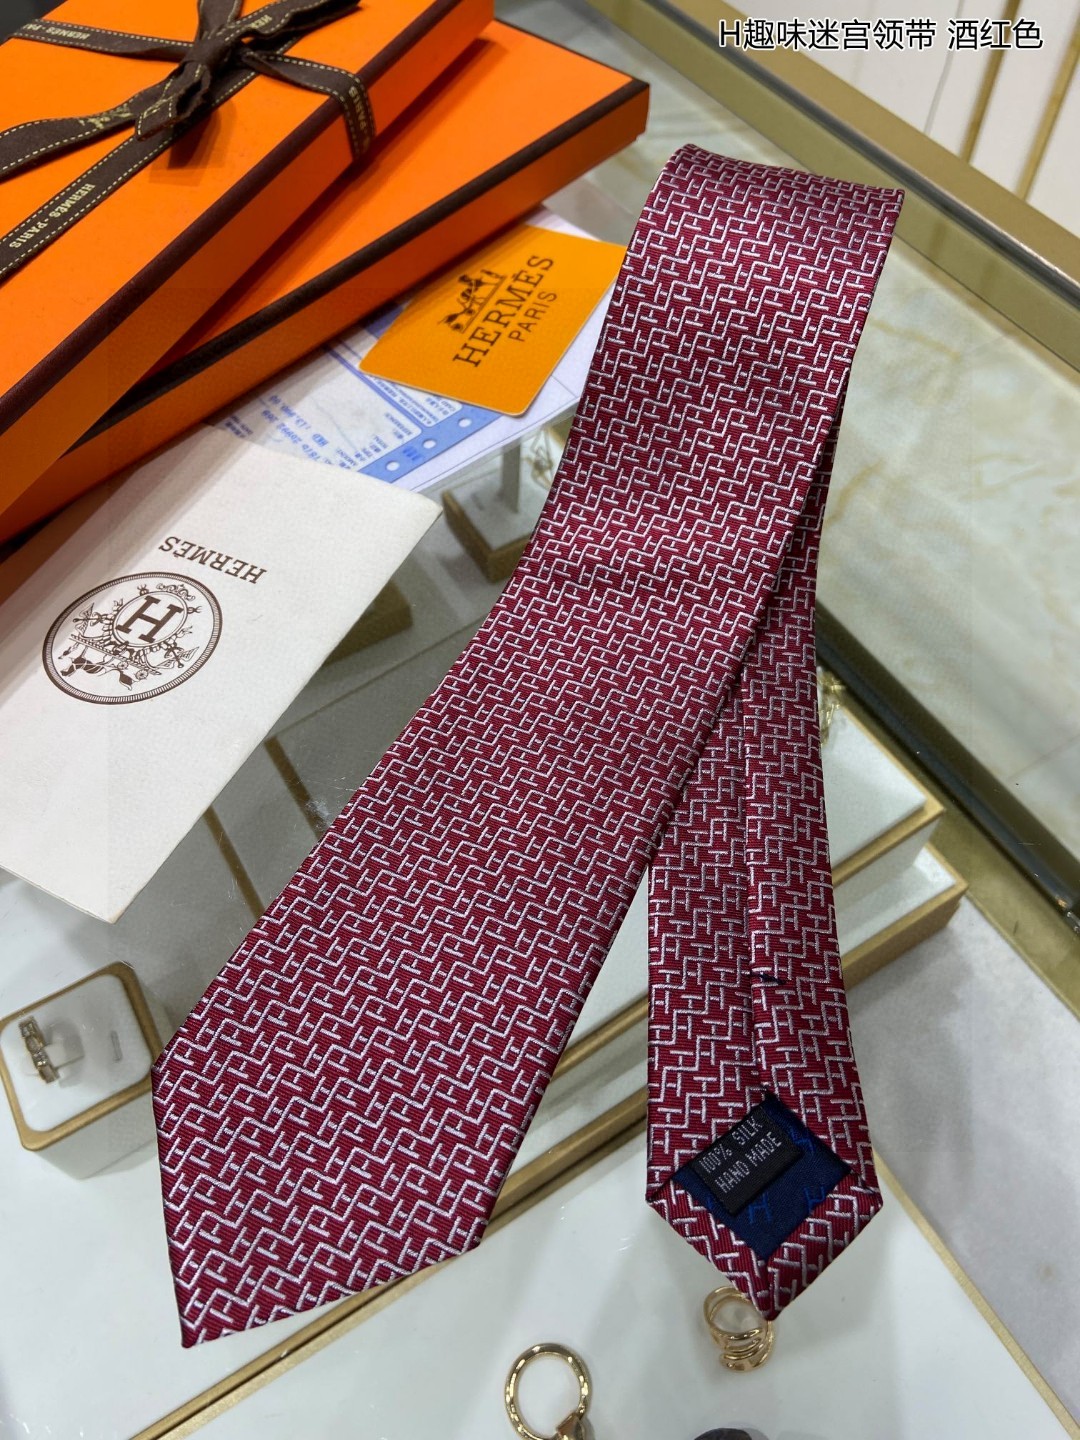 特价男士新款领带系列H趣味迷宫领带稀有H家每年都有一千条不同印花的领带面世从最初的多以几何图案表现骑术活